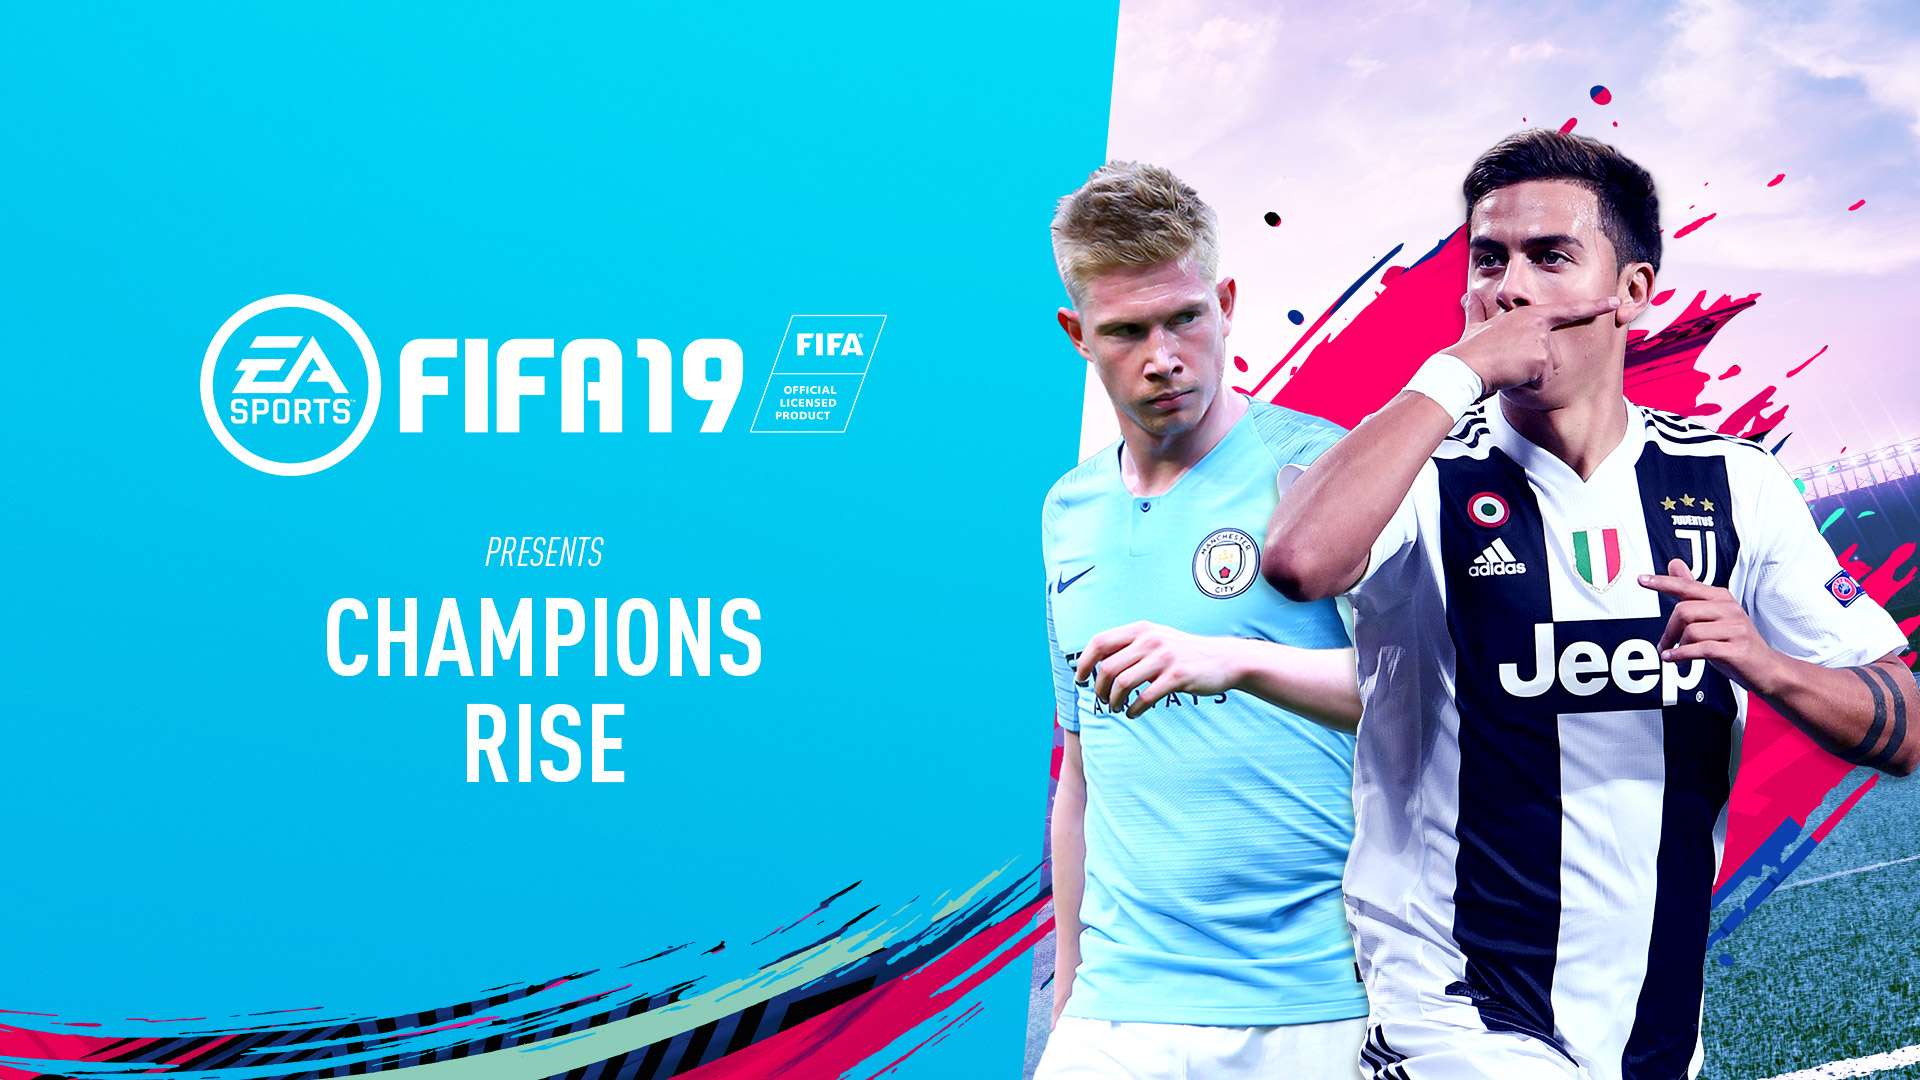 EA SPORTS_FIFA19_Champions Rise